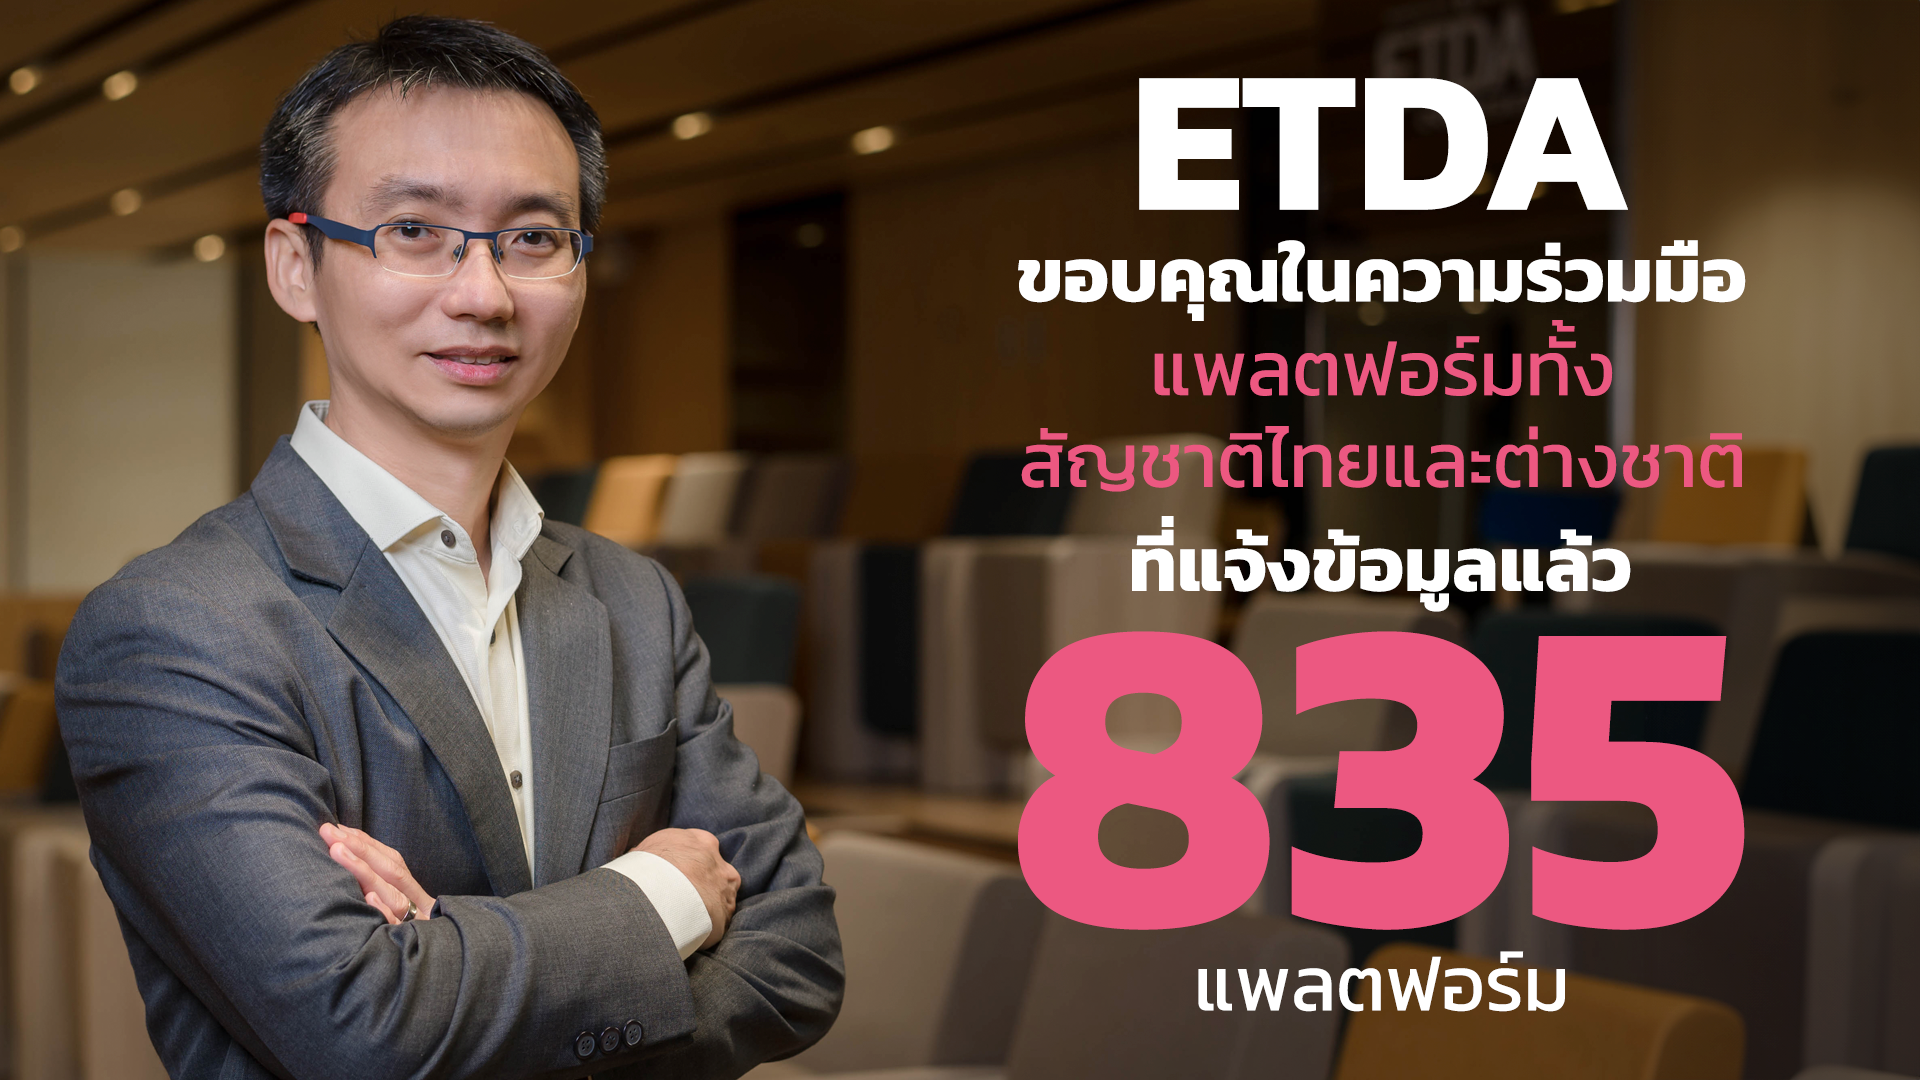 ETDA ขอบคุณในความร่วมมือ ทุกแพลตฟอร์มทั้งสัญชาติไทยและต่างประเทศ  แจ้งข้อมูลตามกฎหมาย DPS แล้ว 835 แพลตฟอร์ม